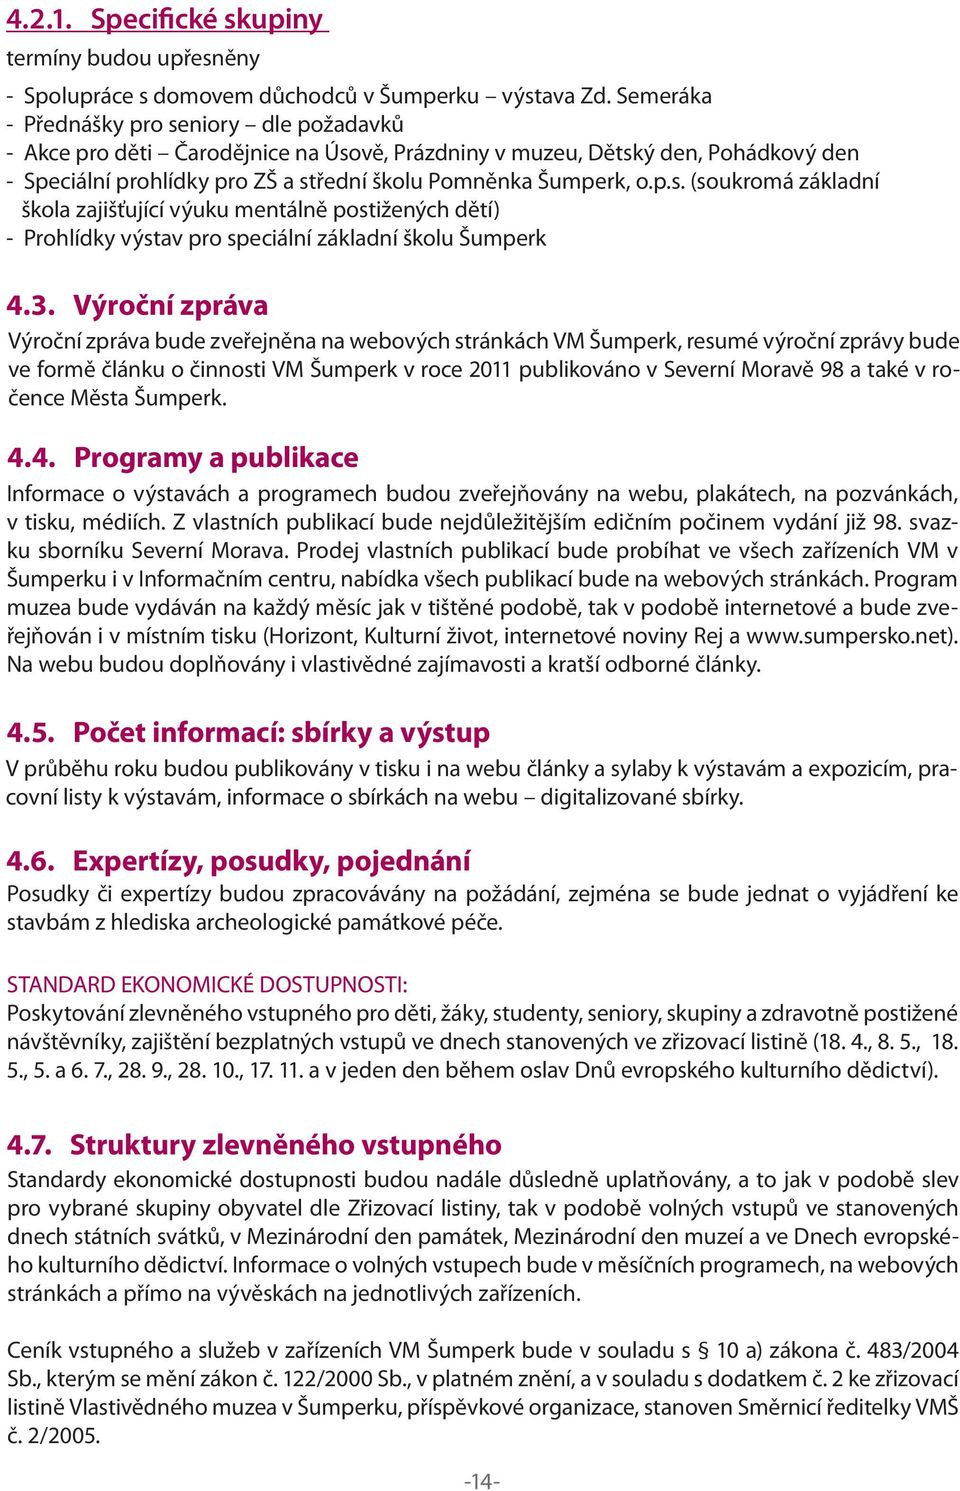 3. Výroční zpráva Výroční zpráva bude zveřejněna na webových stránkách VM Šumperk, resumé výroční zprávy bude ve formě článku o činnosti VM Šumperk v roce 2011 publikováno v Severní Moravě 98 a také